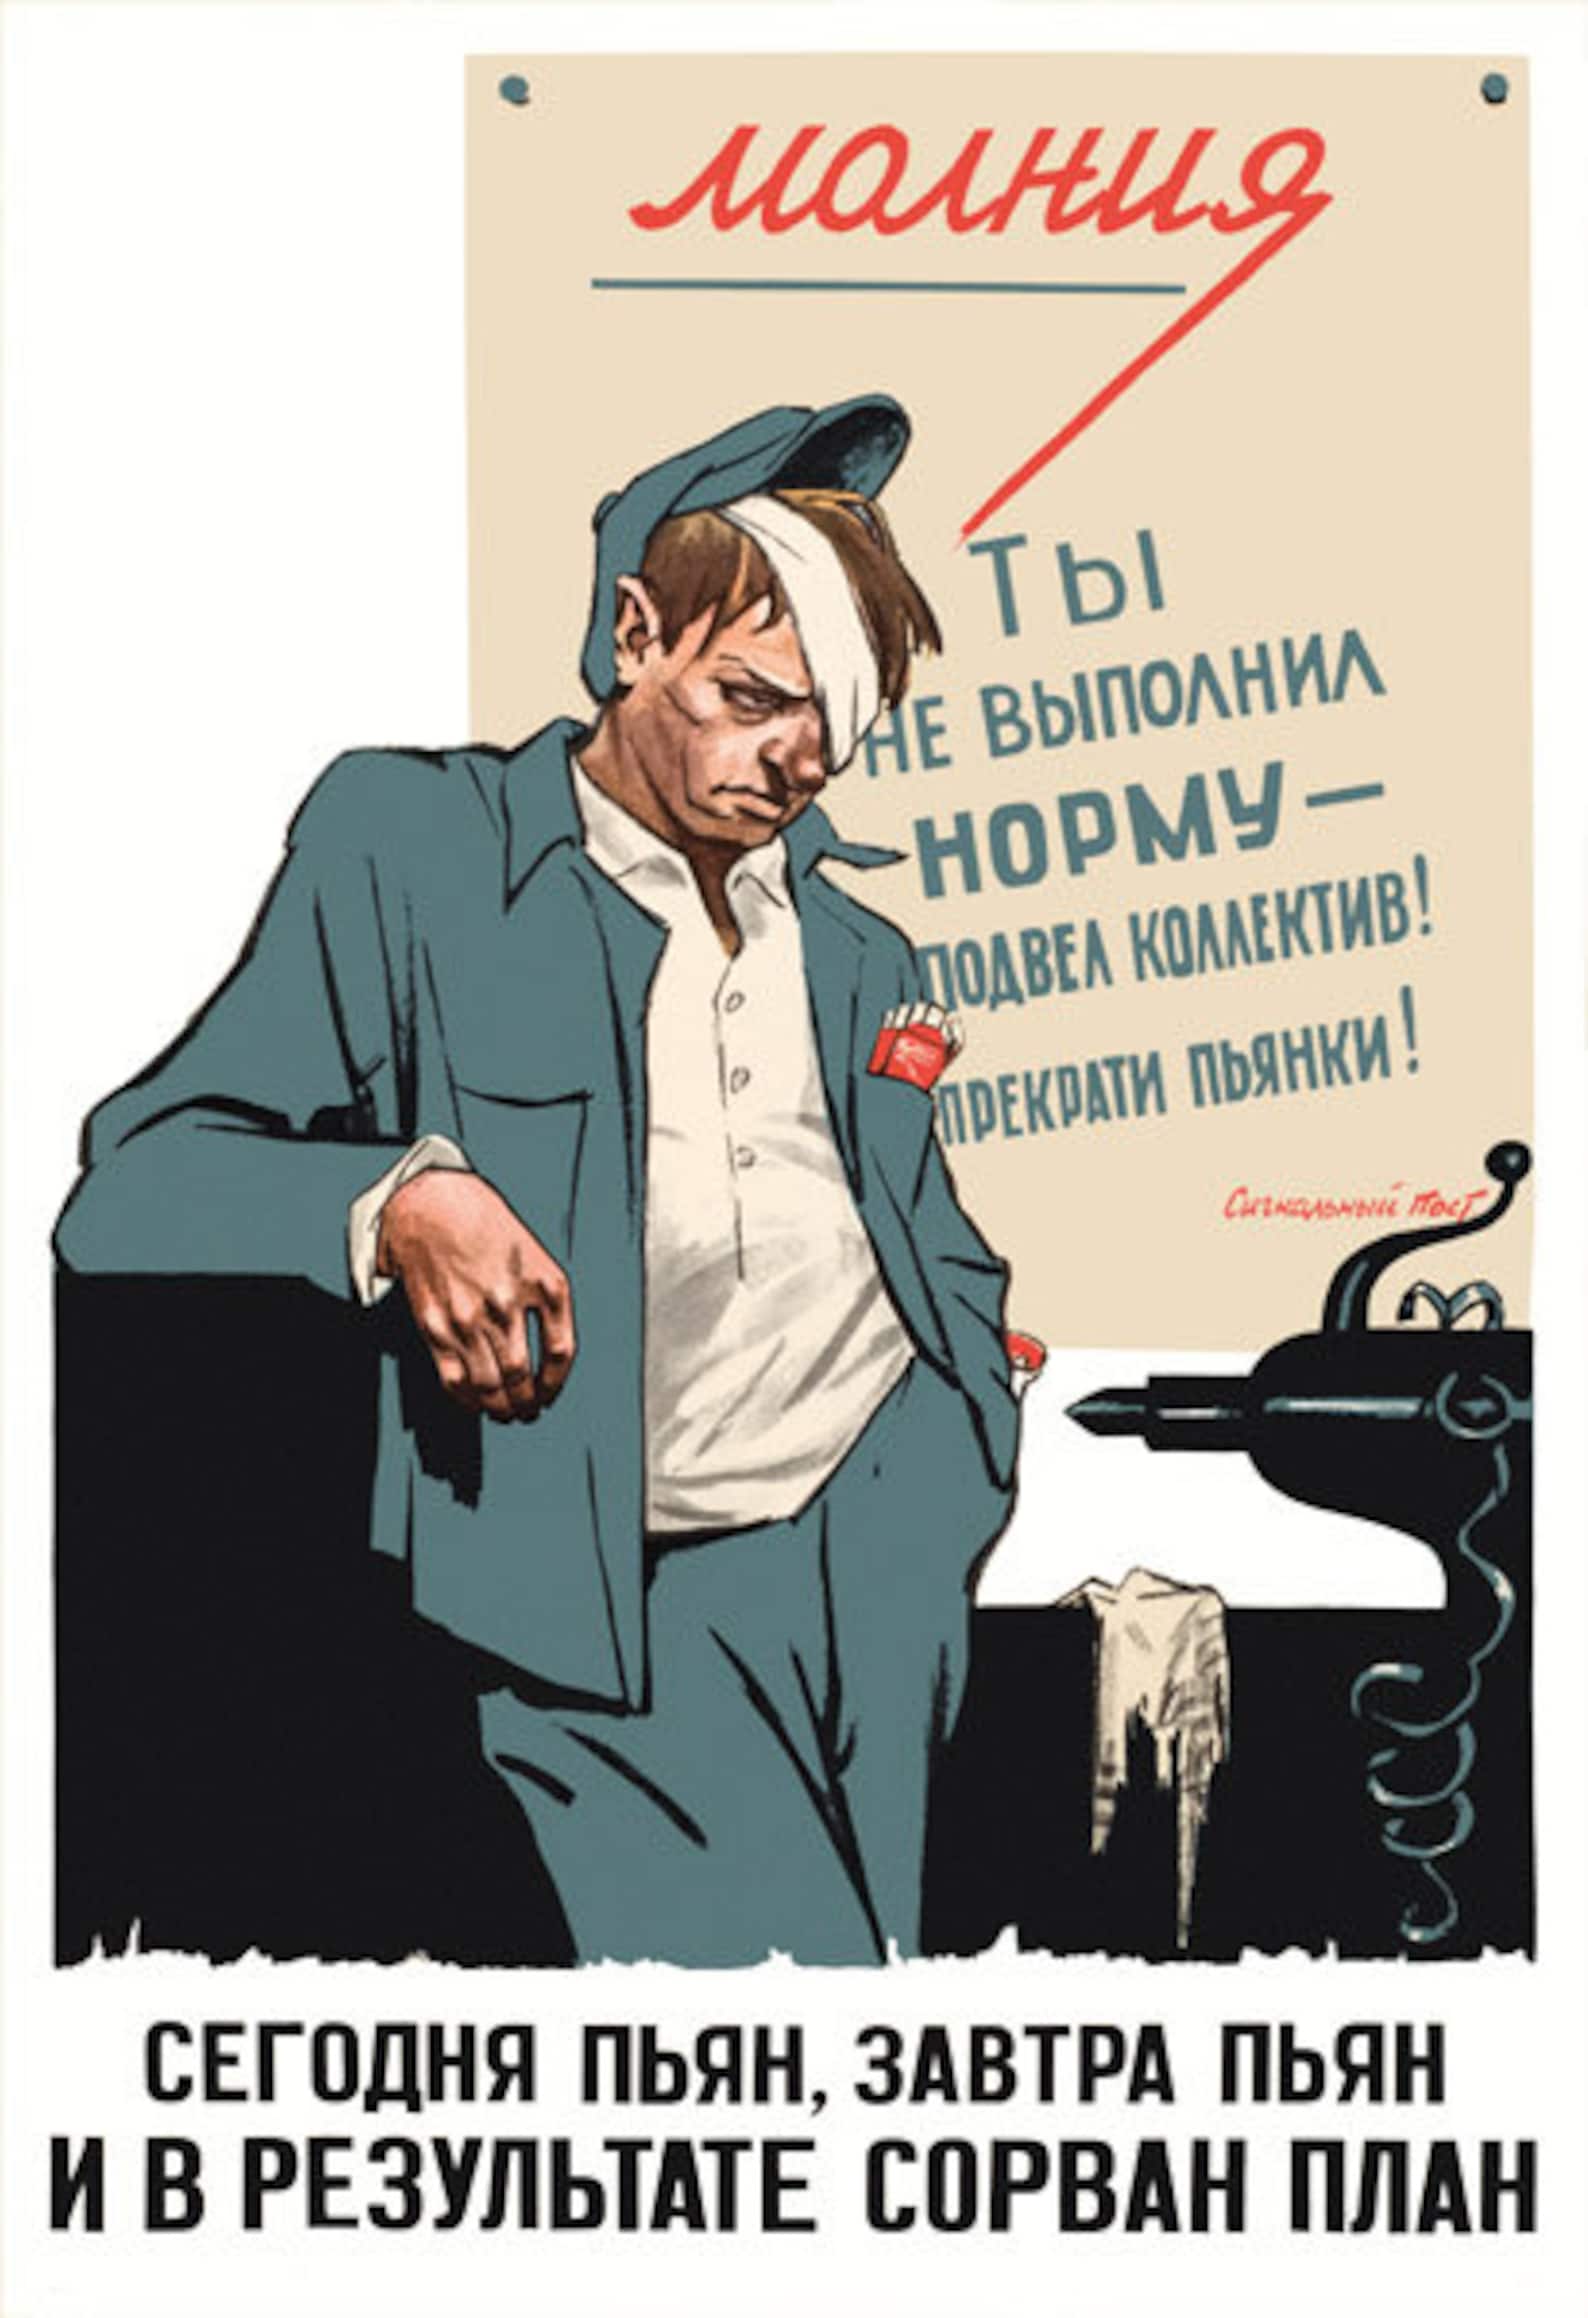 Я сегодня пью и буду пьян. Советские плакаты. Советские плакаты про алкоголизм. Советские плакаты про пьянство. Плакаты про пьянство на работе.